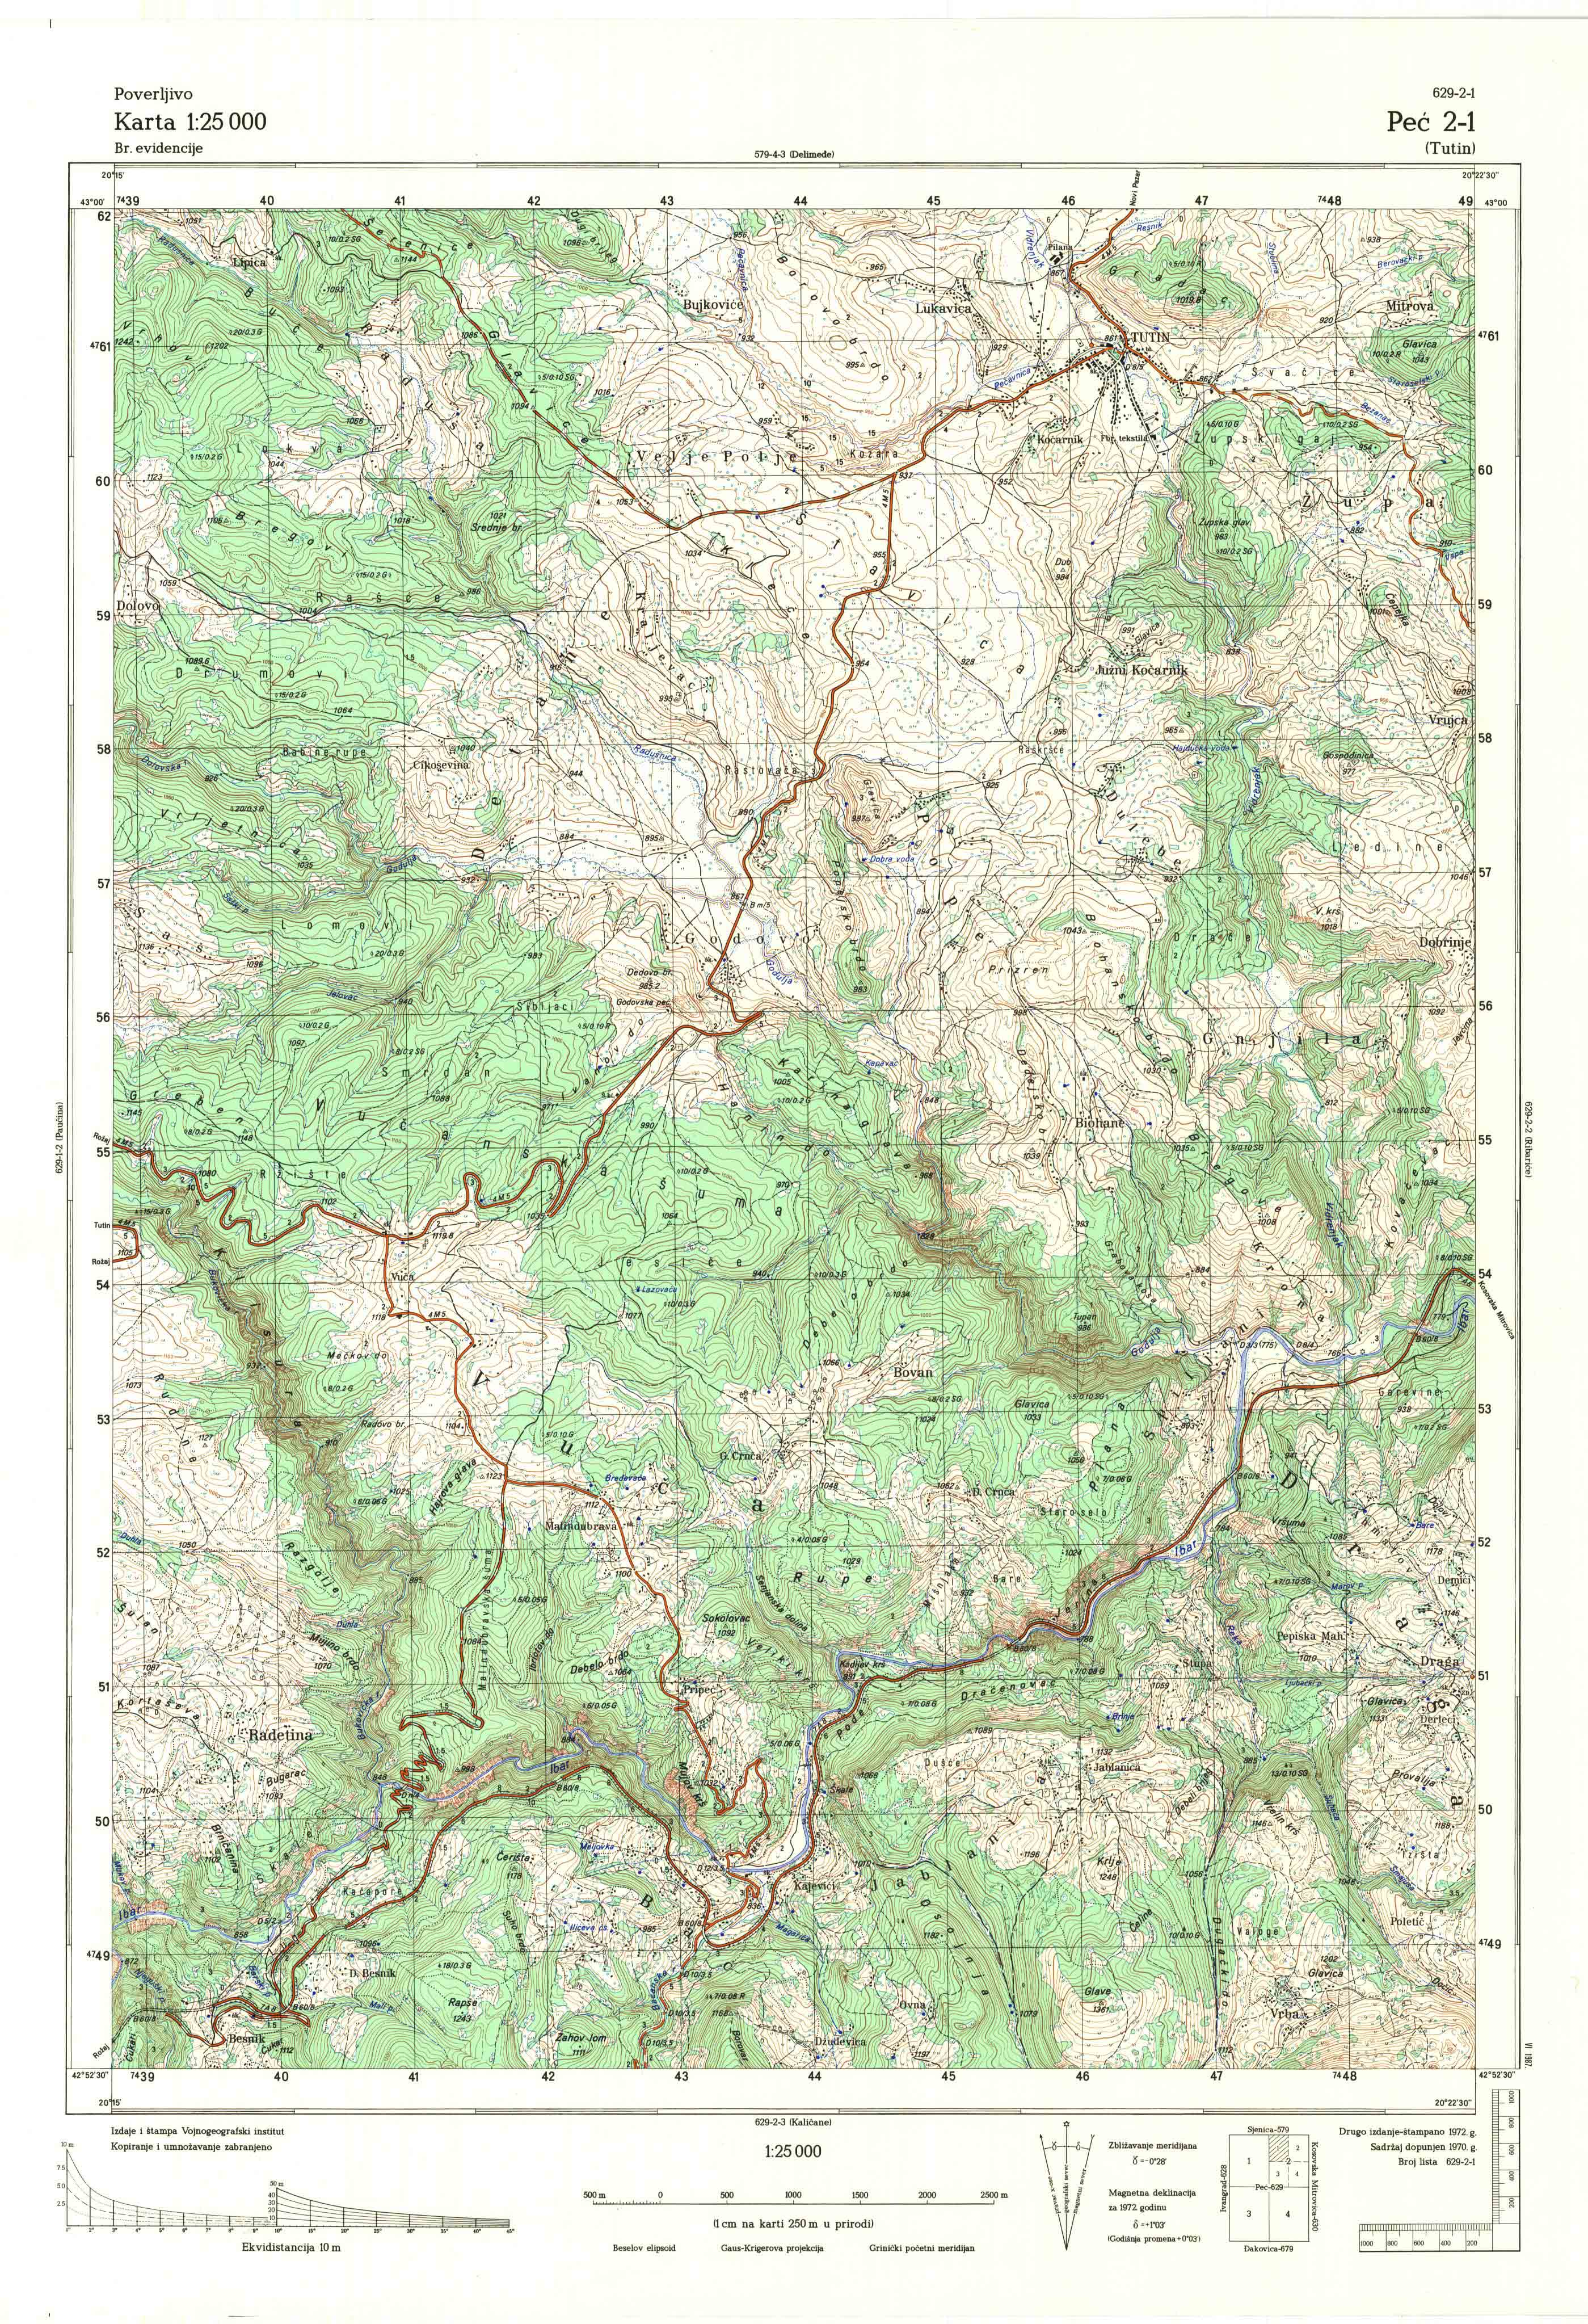  topografska karta Kosovo 25000 JNA  Peć